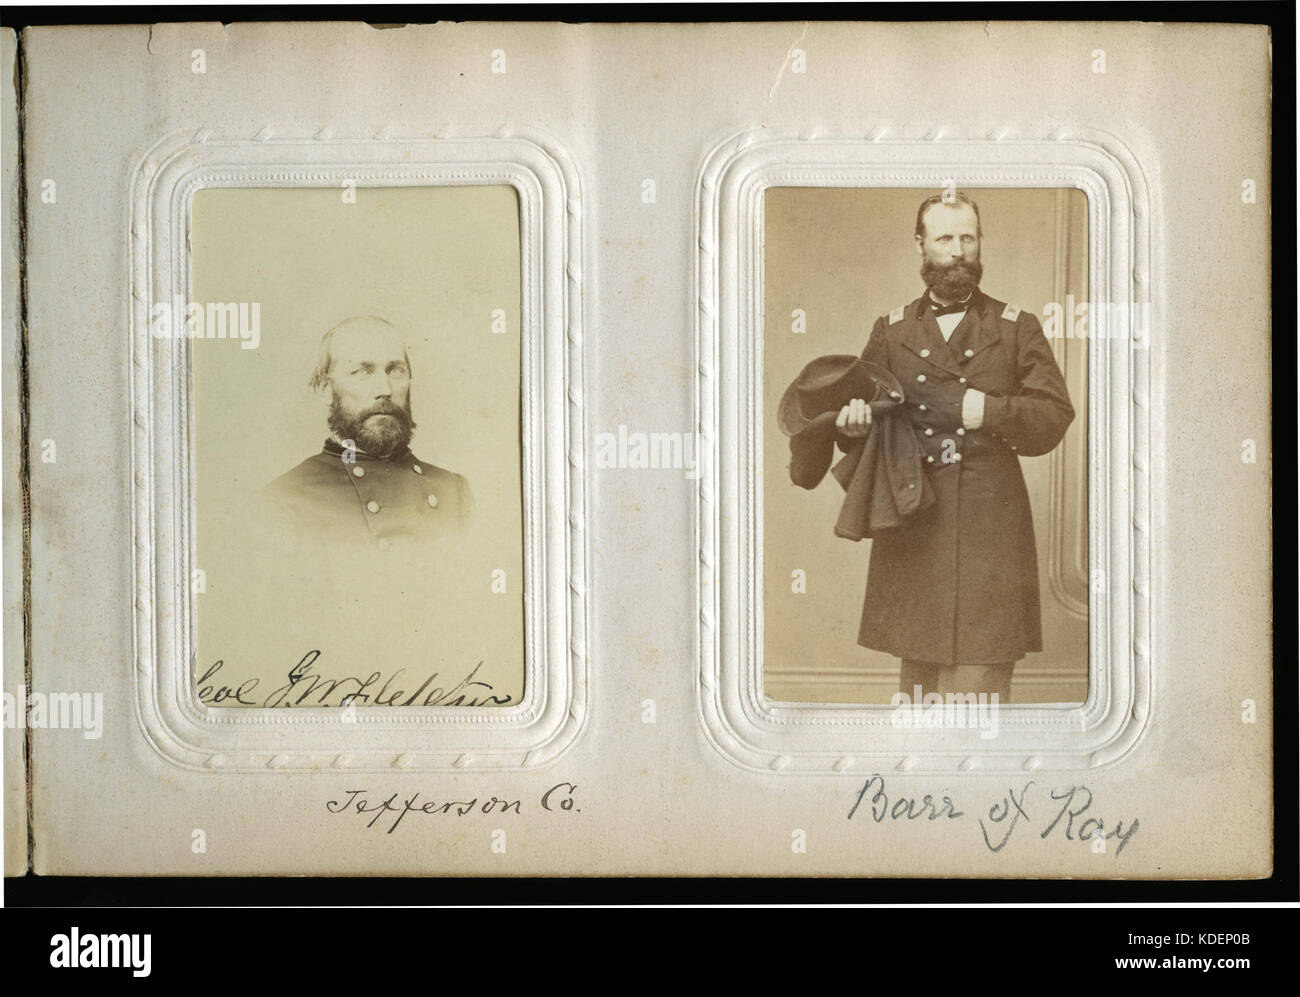 Missouri Convenzione costituzionale del 1865 pagina Album con Lt. Col. John W. Fletcher e il tenente Col. Andrew J. Barr Foto Stock